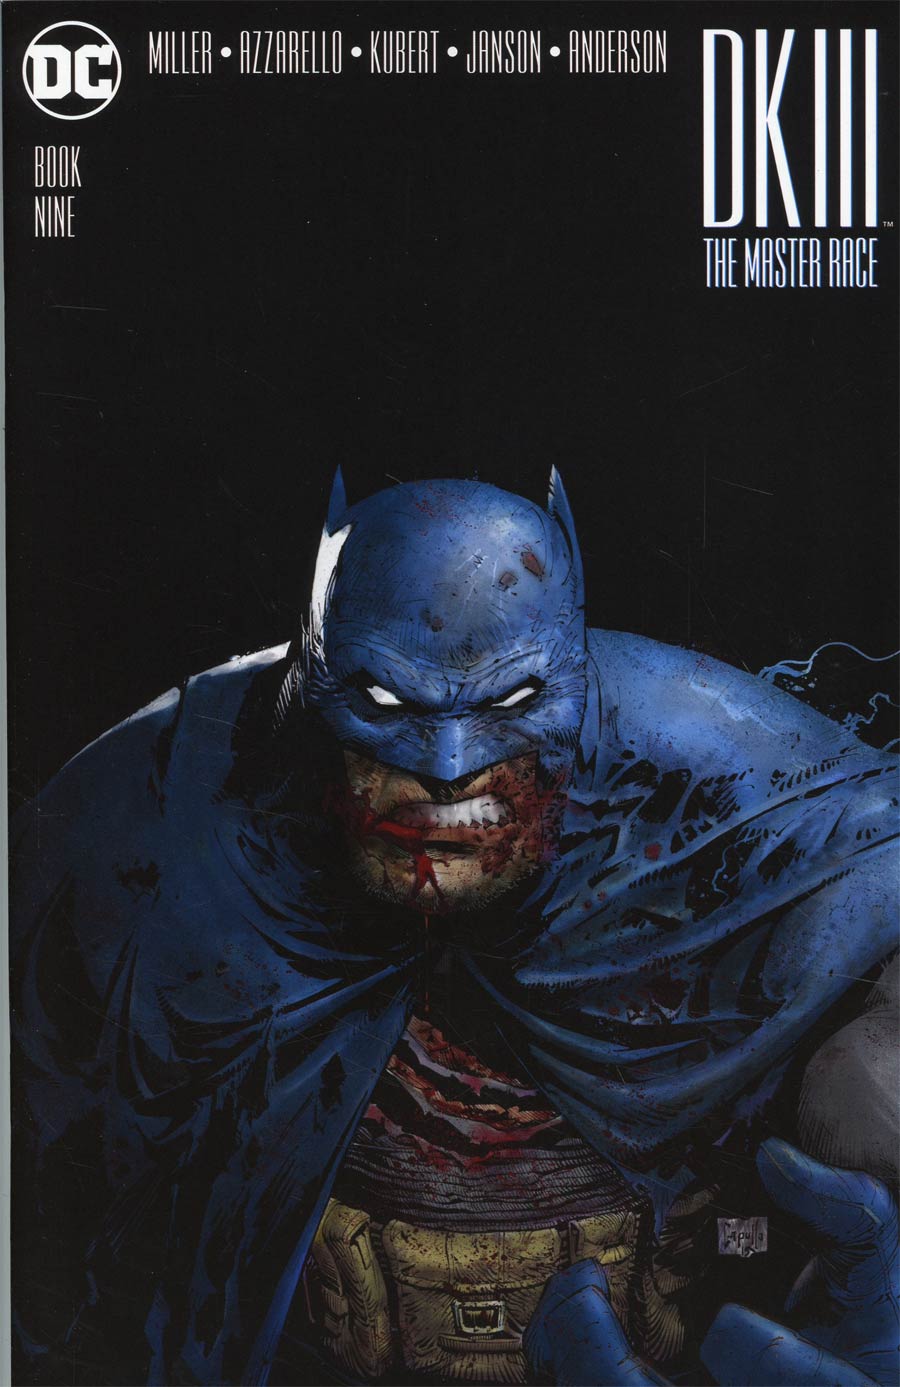 DARK KNIGHT III THE MASTER RACE #9 CGC 9.8 NM/MT ~ 1ST PRINT KUBERT BATMAN COVER